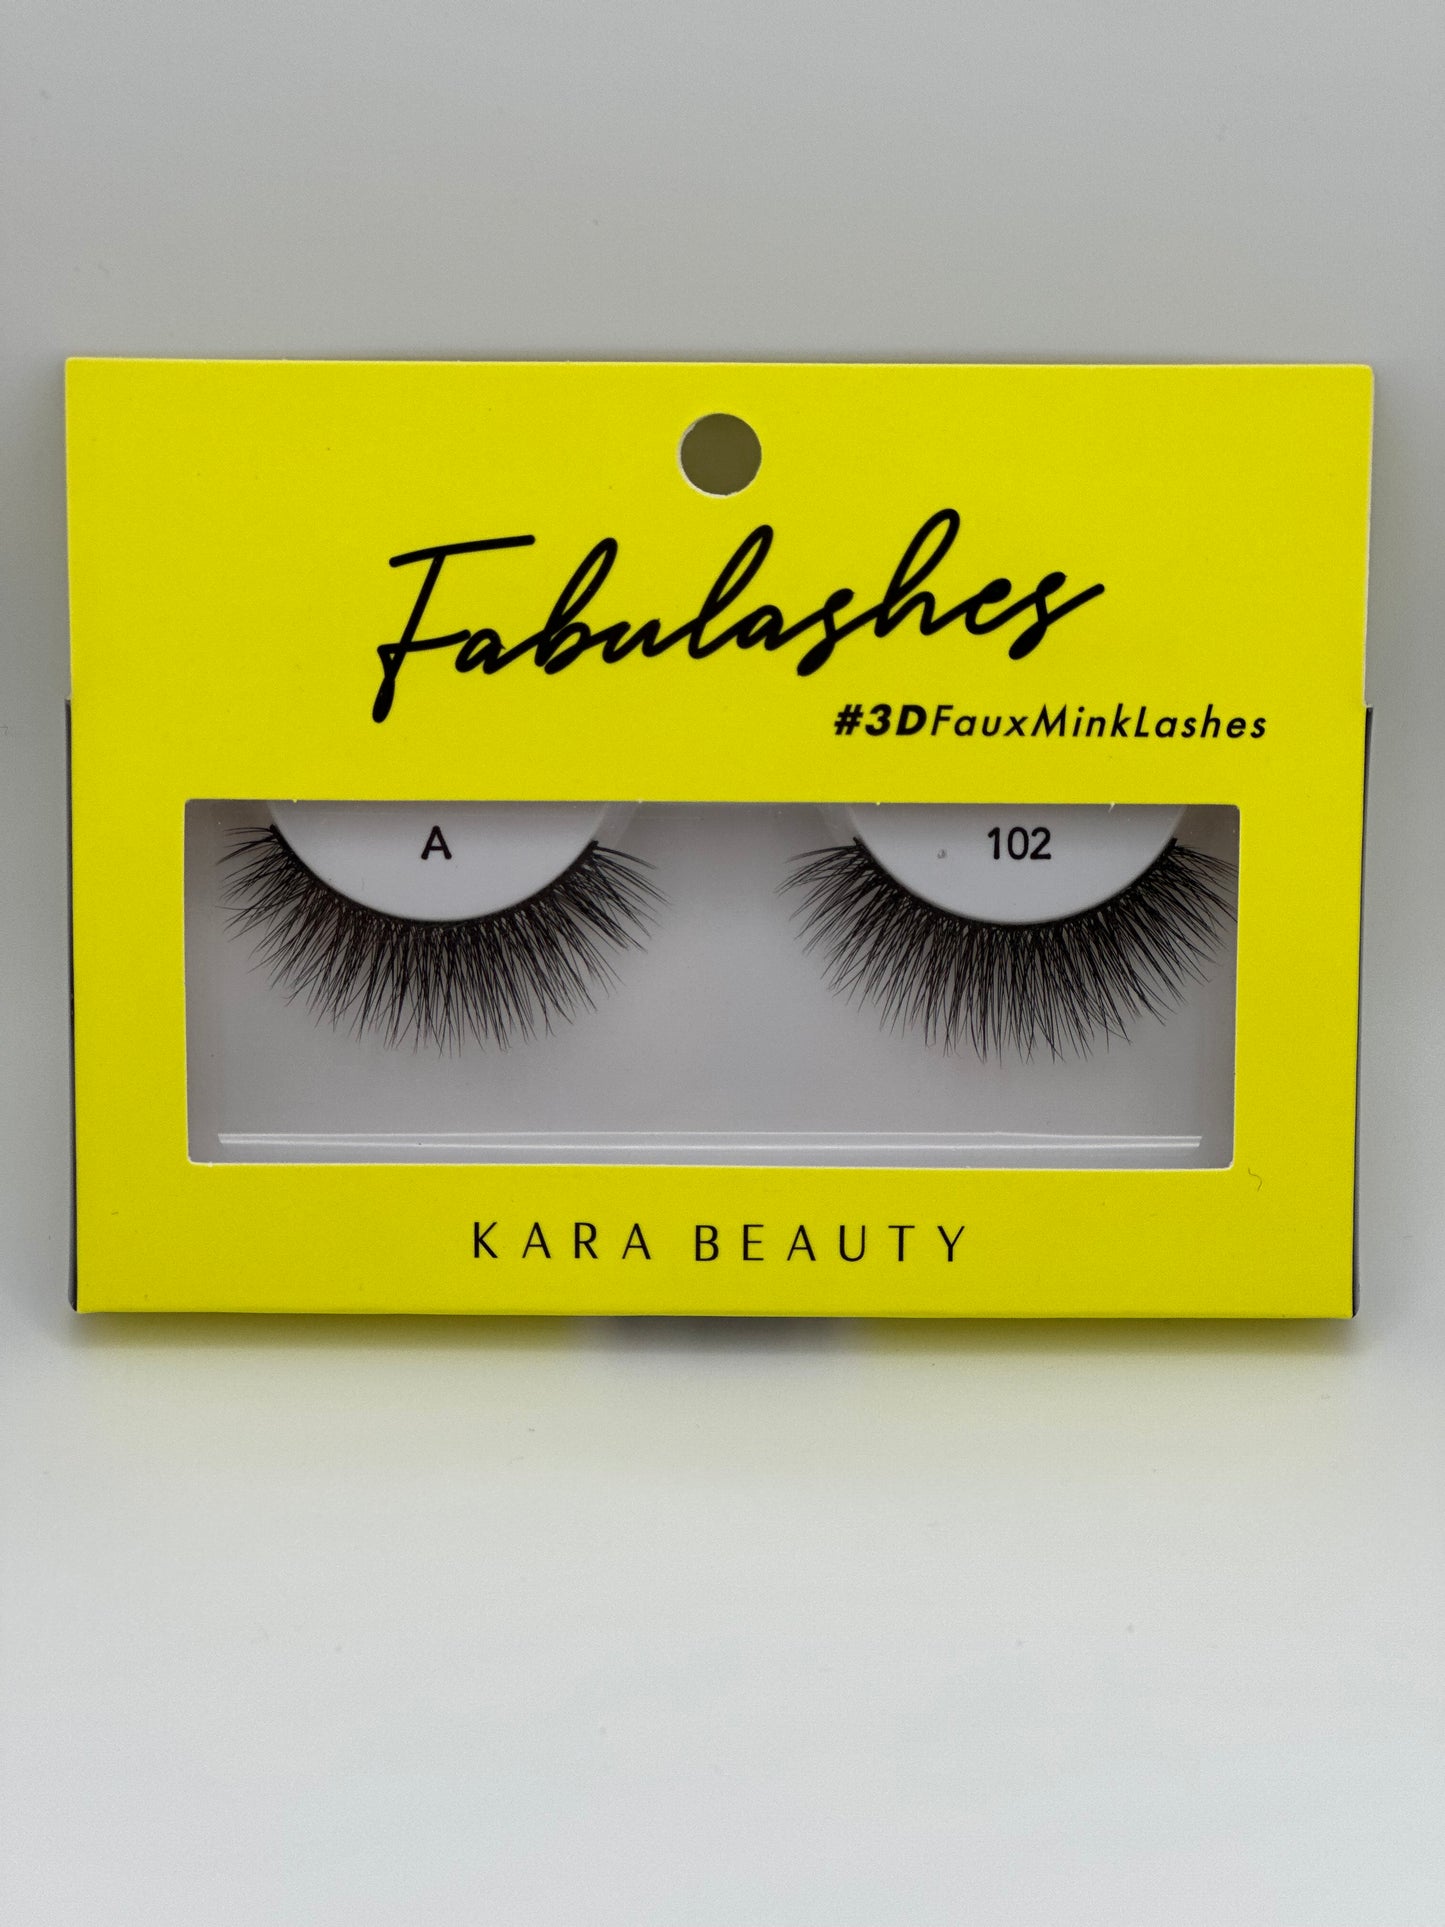 Kara Beauty Fabulashes #3D FauxMinkLashes